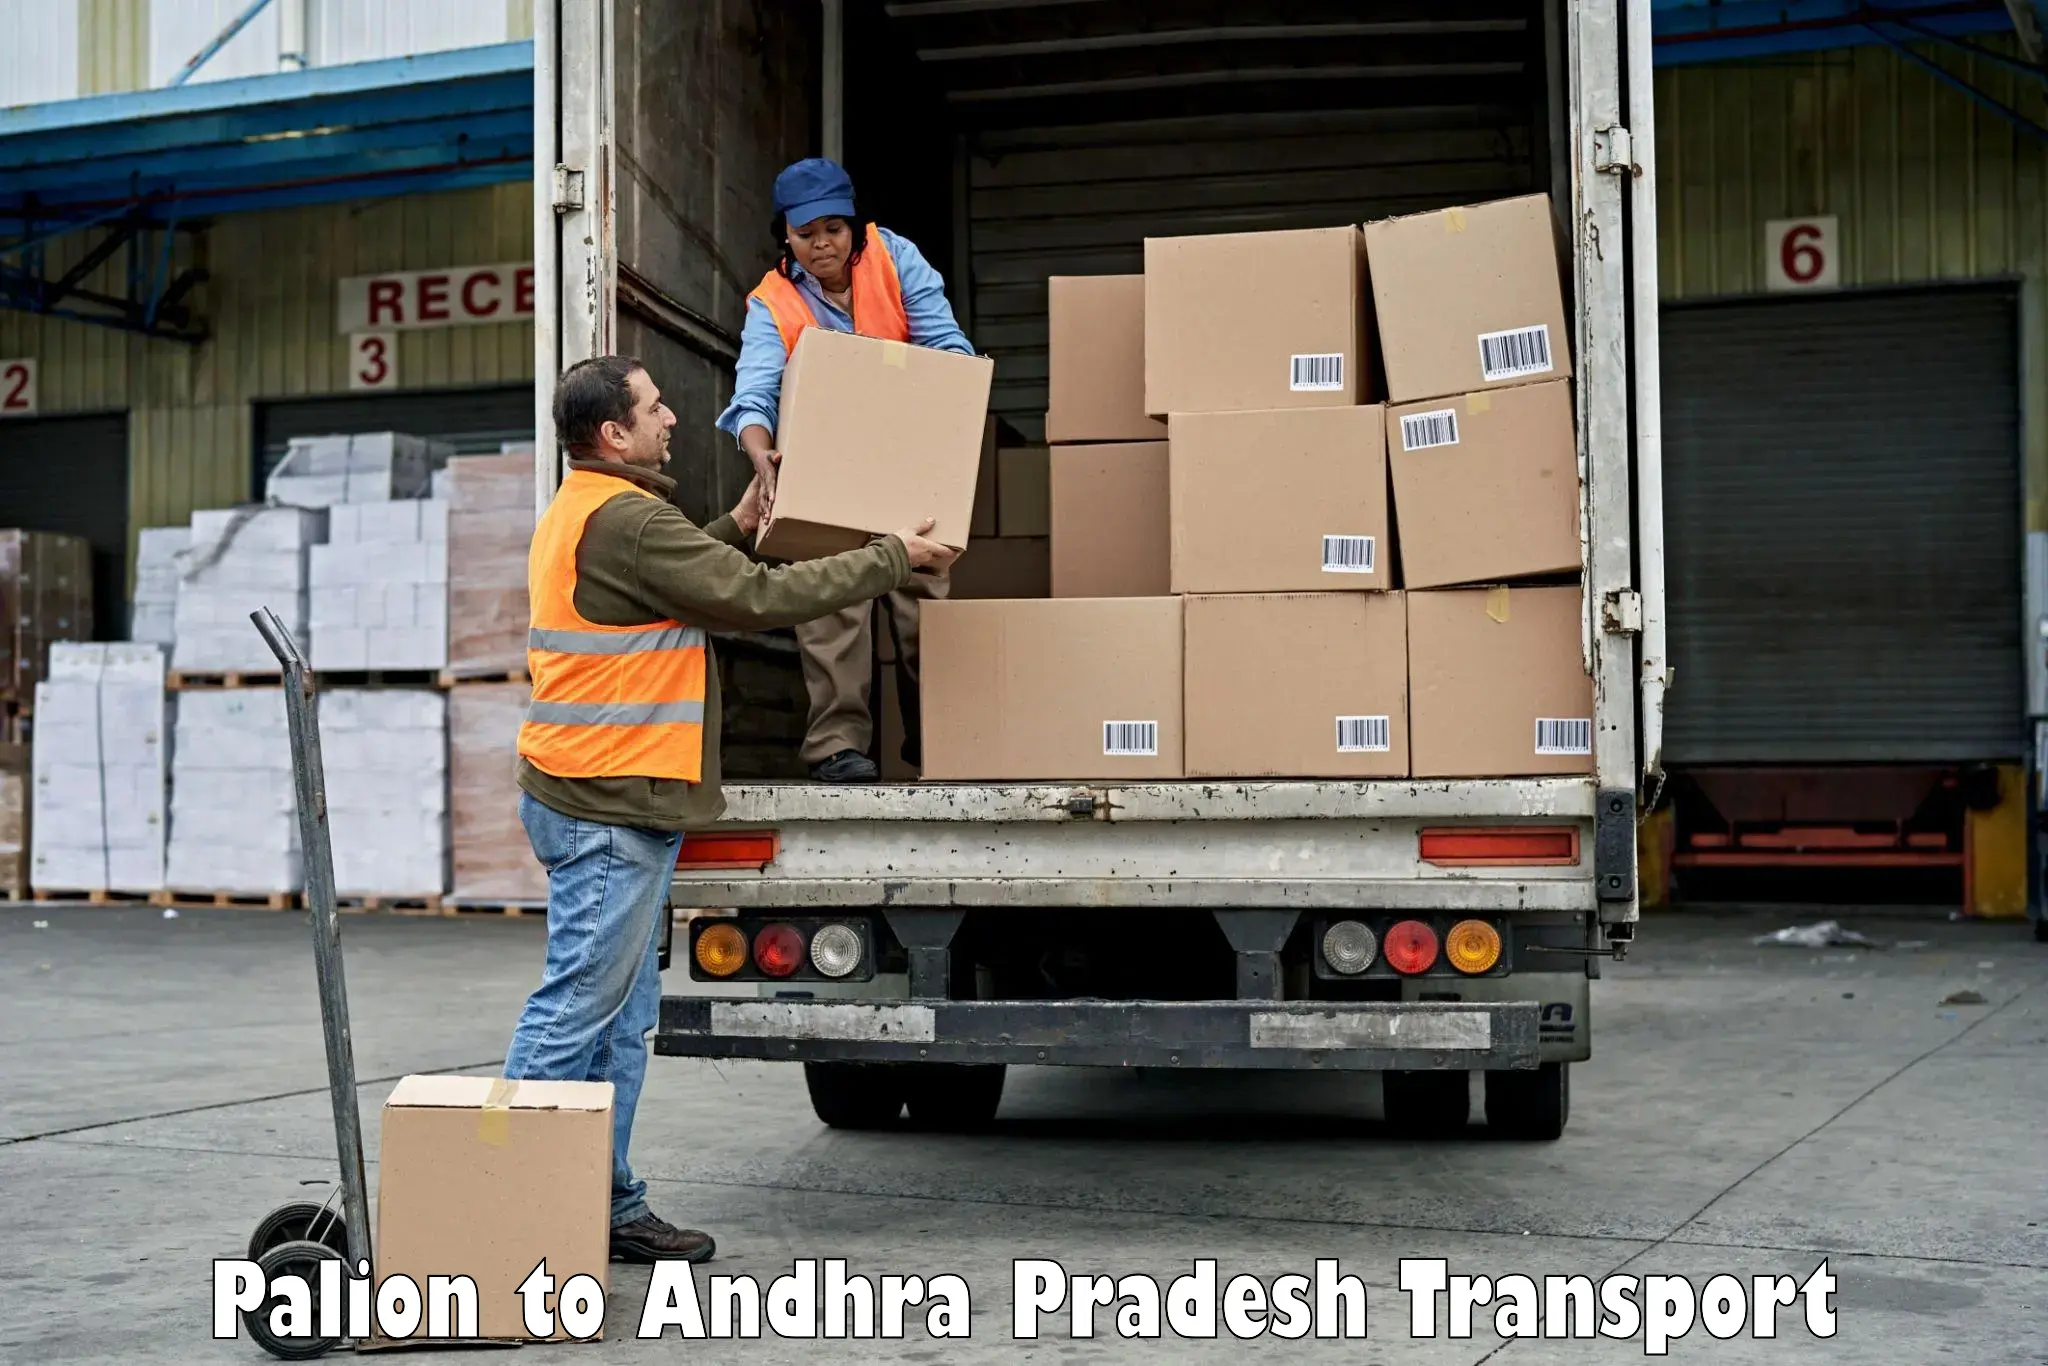 Furniture transport service Palion to Andhra Pradesh